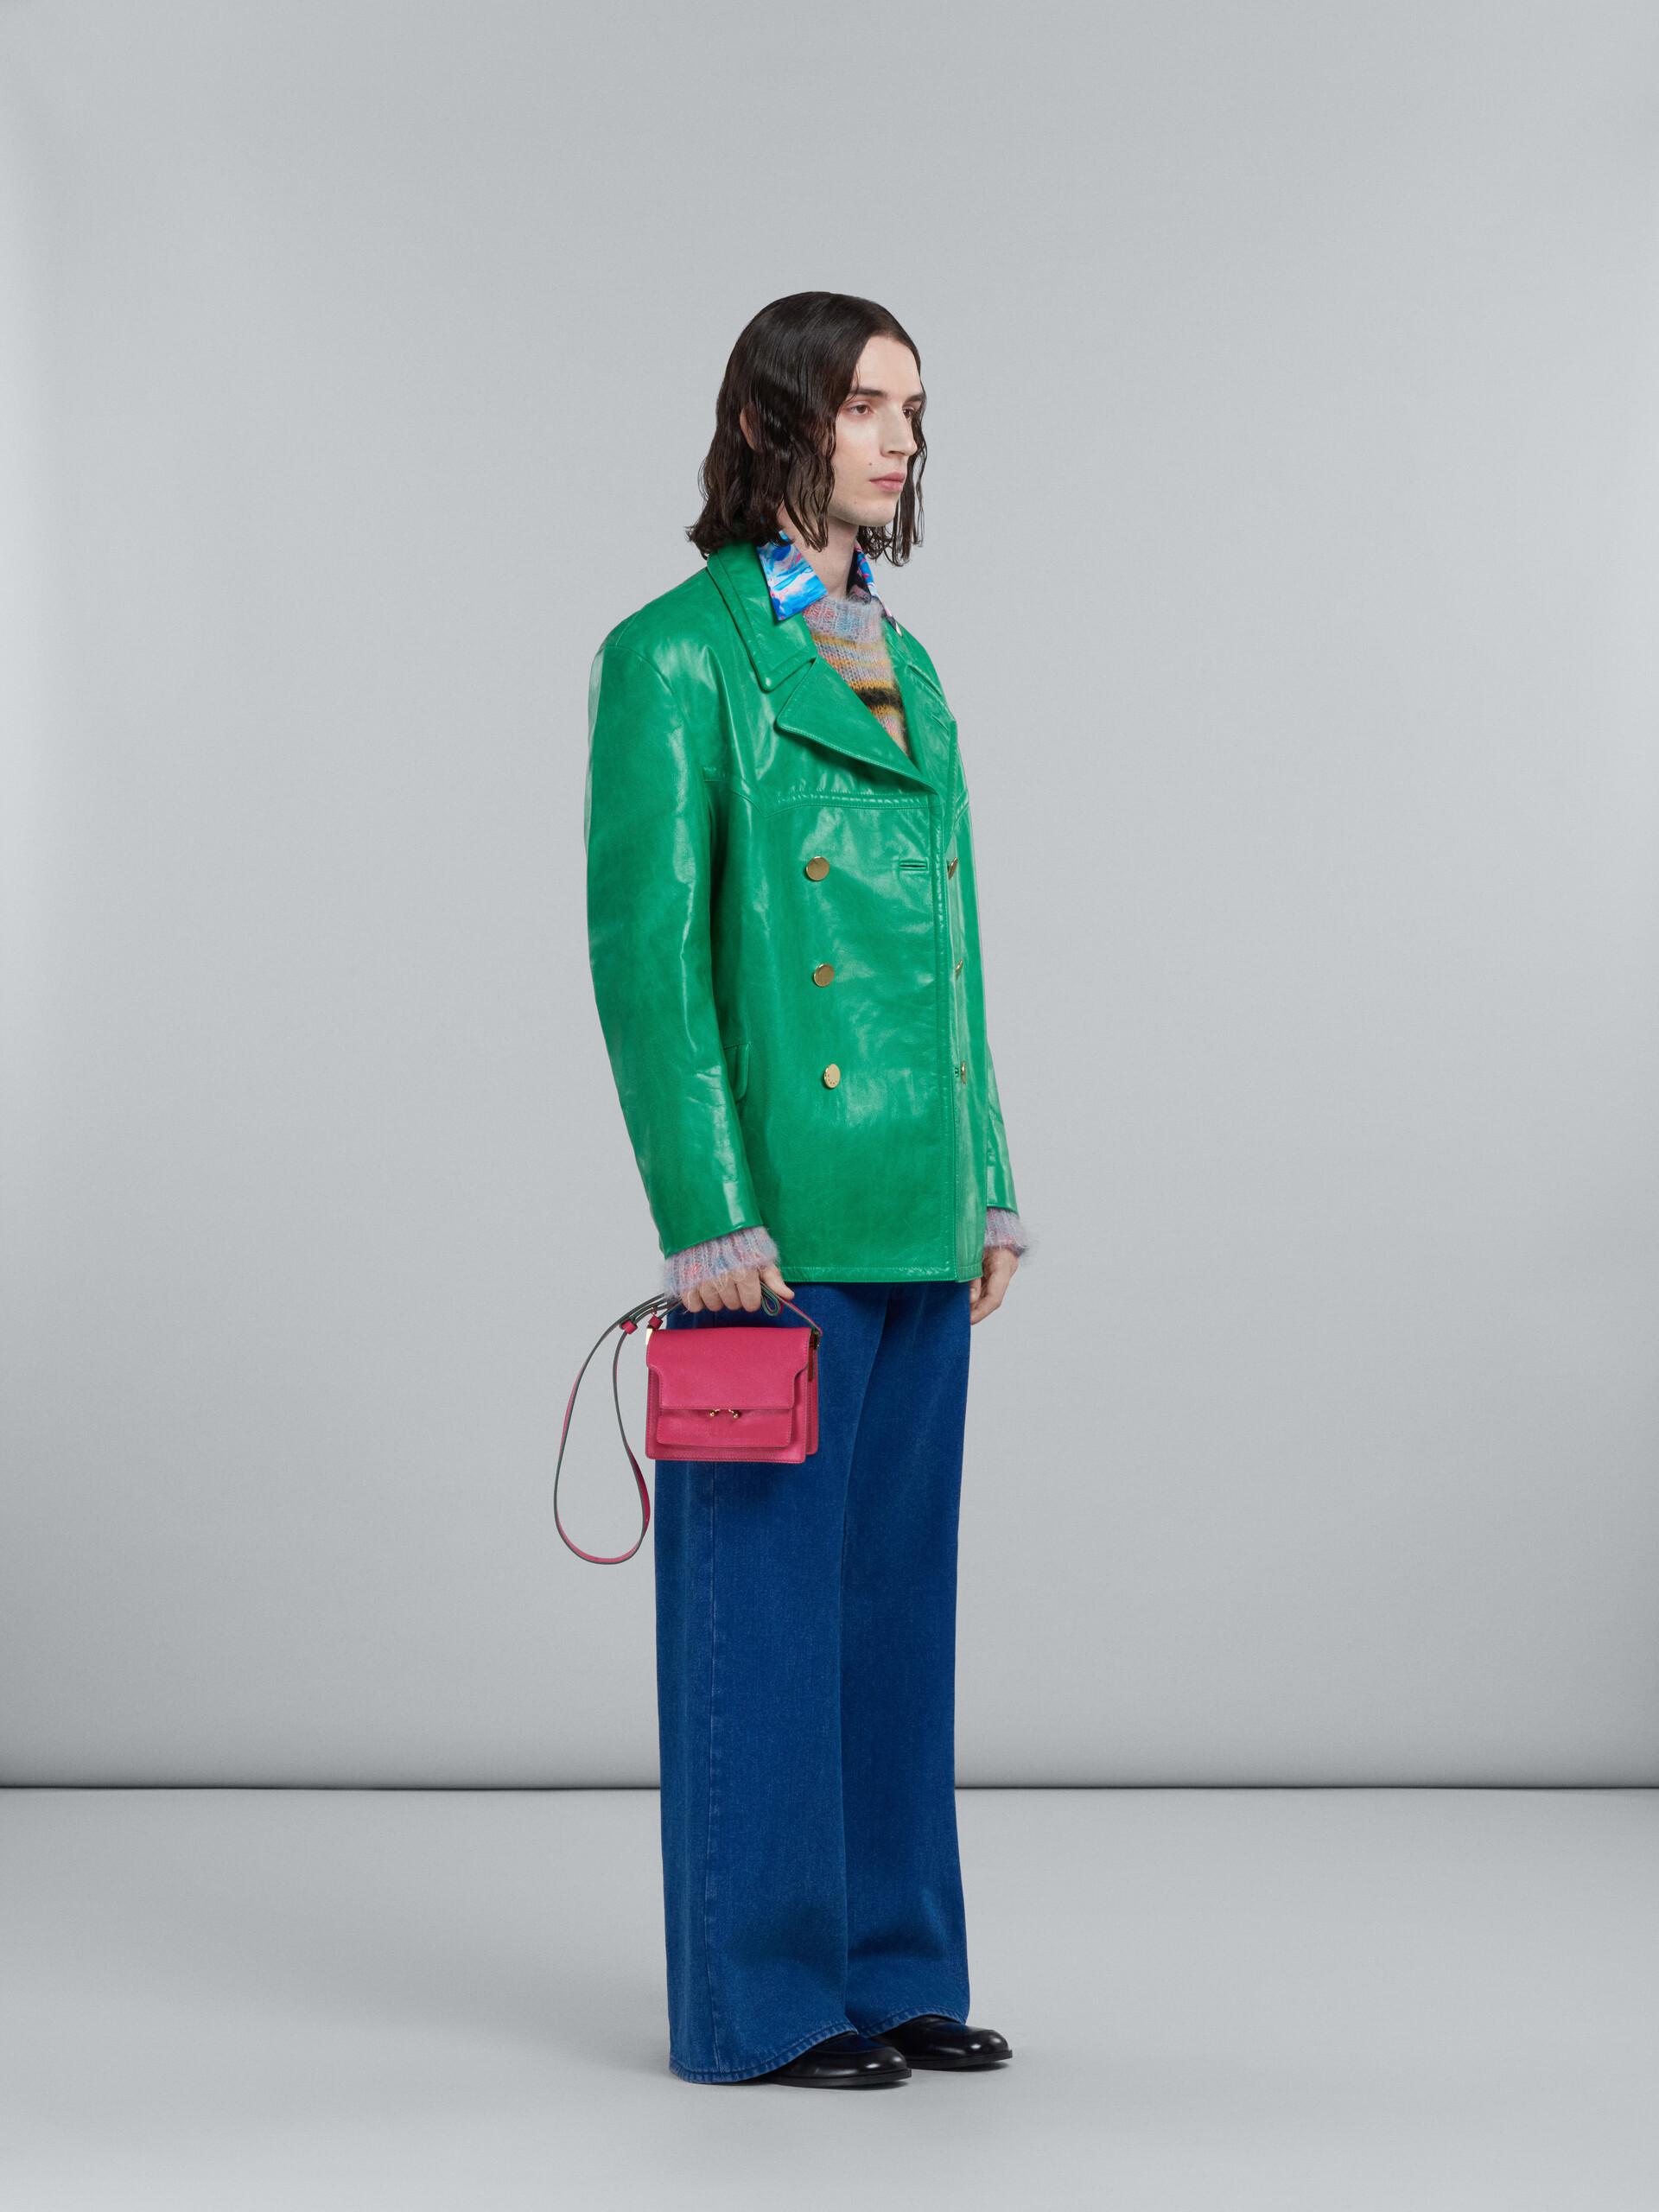 Doppelreihige Jacke aus glänzendem grünem Leder - Mäntel - Image 6